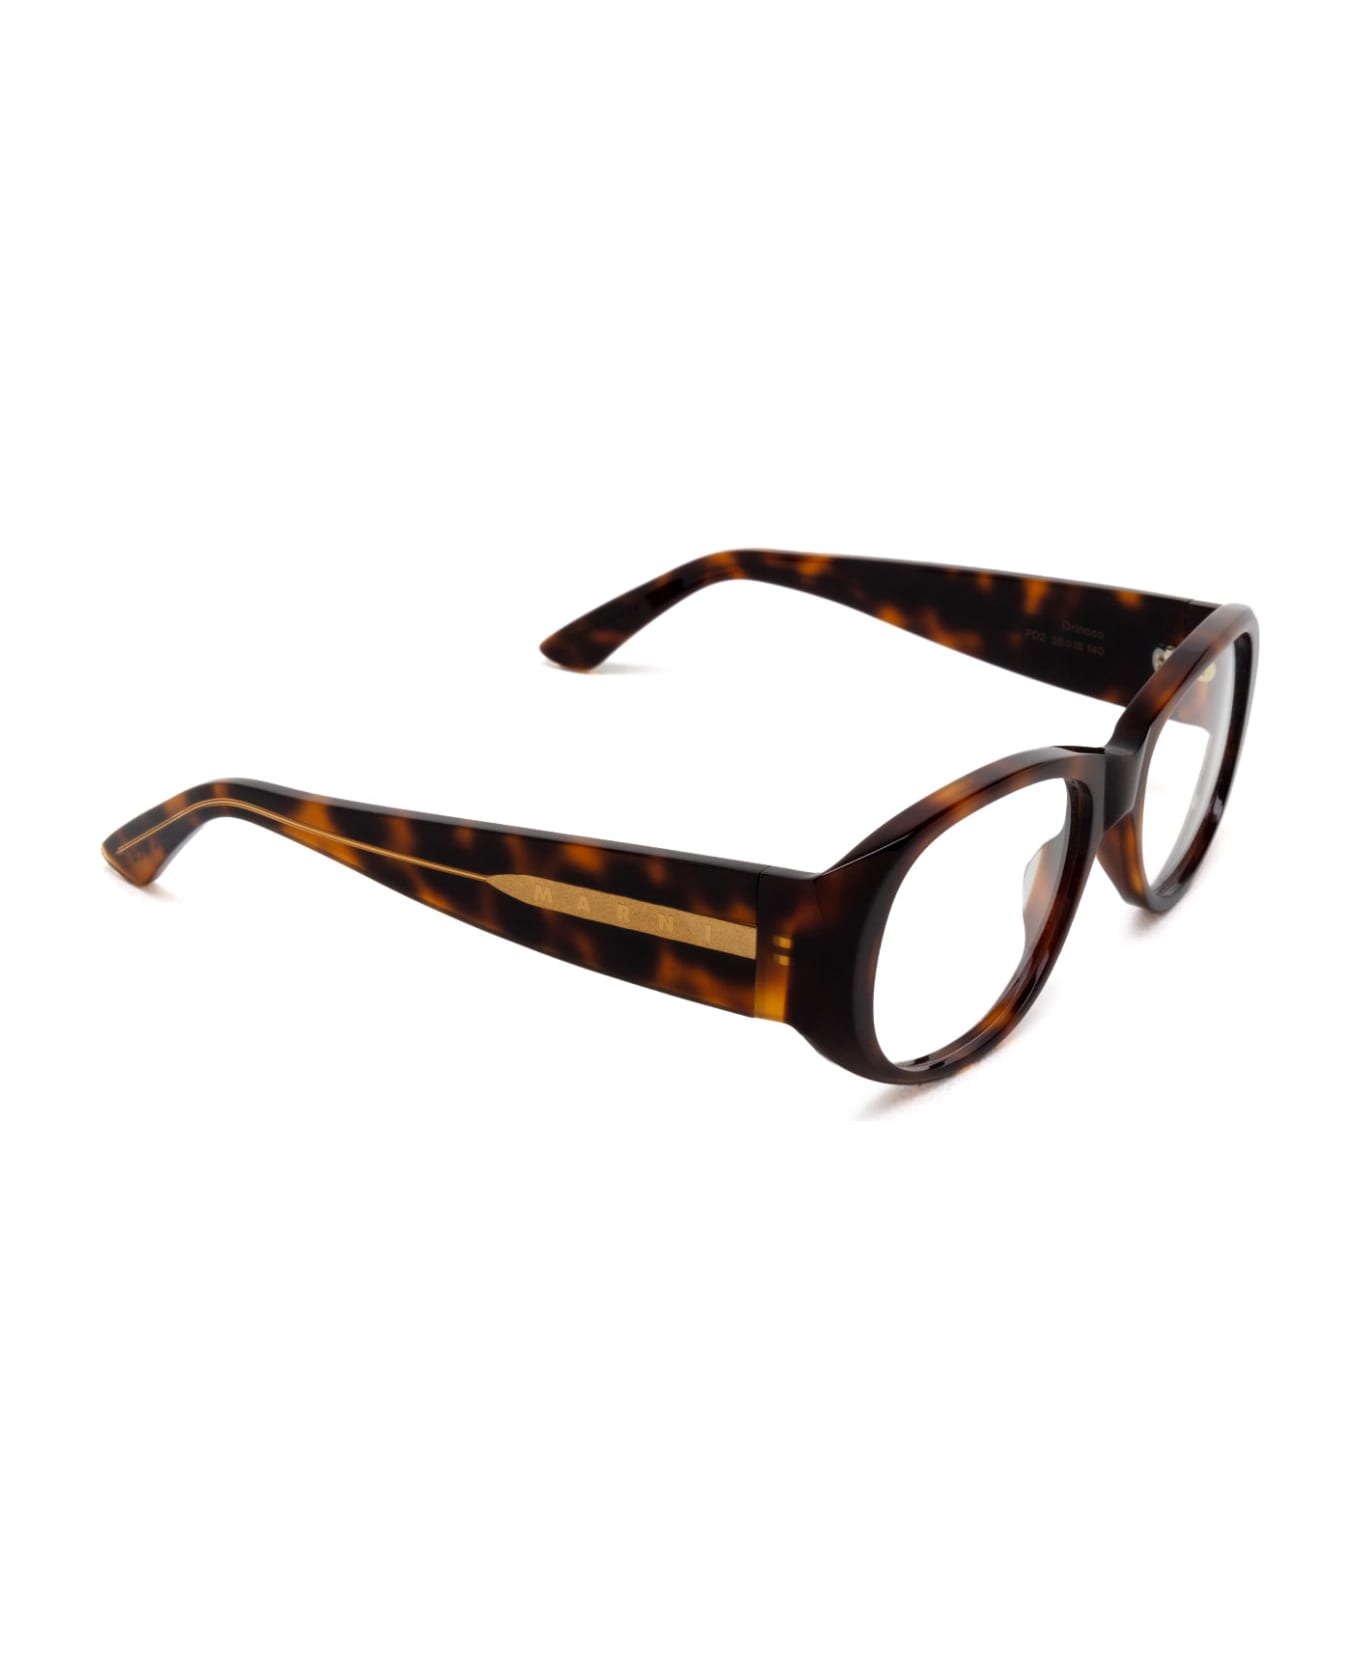 Marni Eyewear Orinoco Optical Havana Glasses - Havana アイウェア